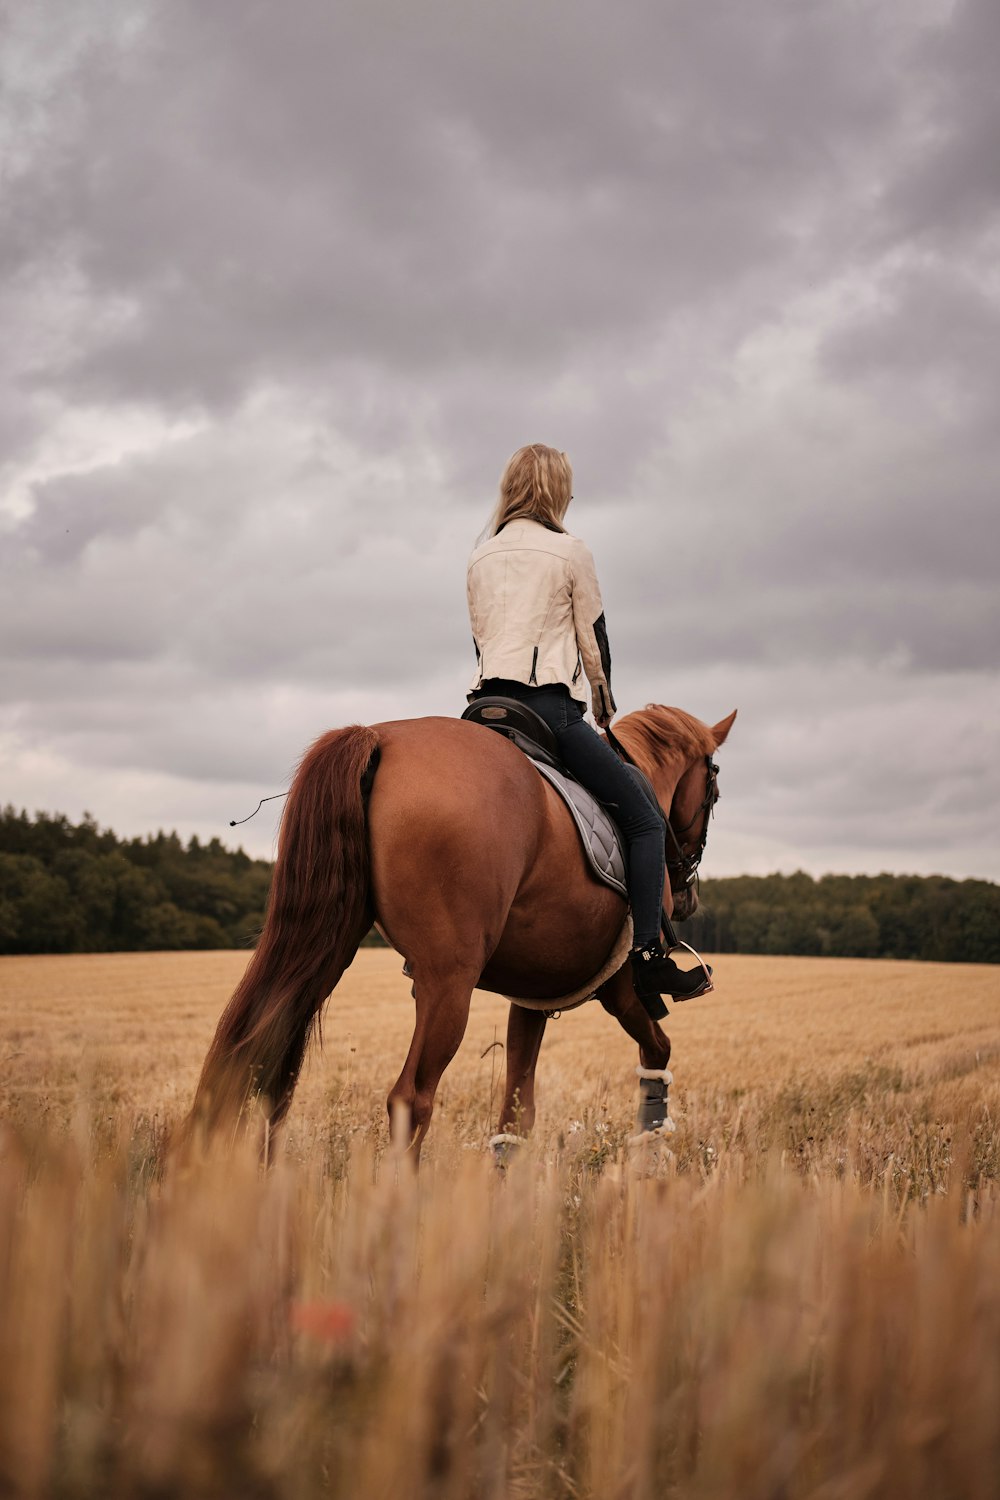 Mujer con camisa blanca montando caballo marrón durante el día